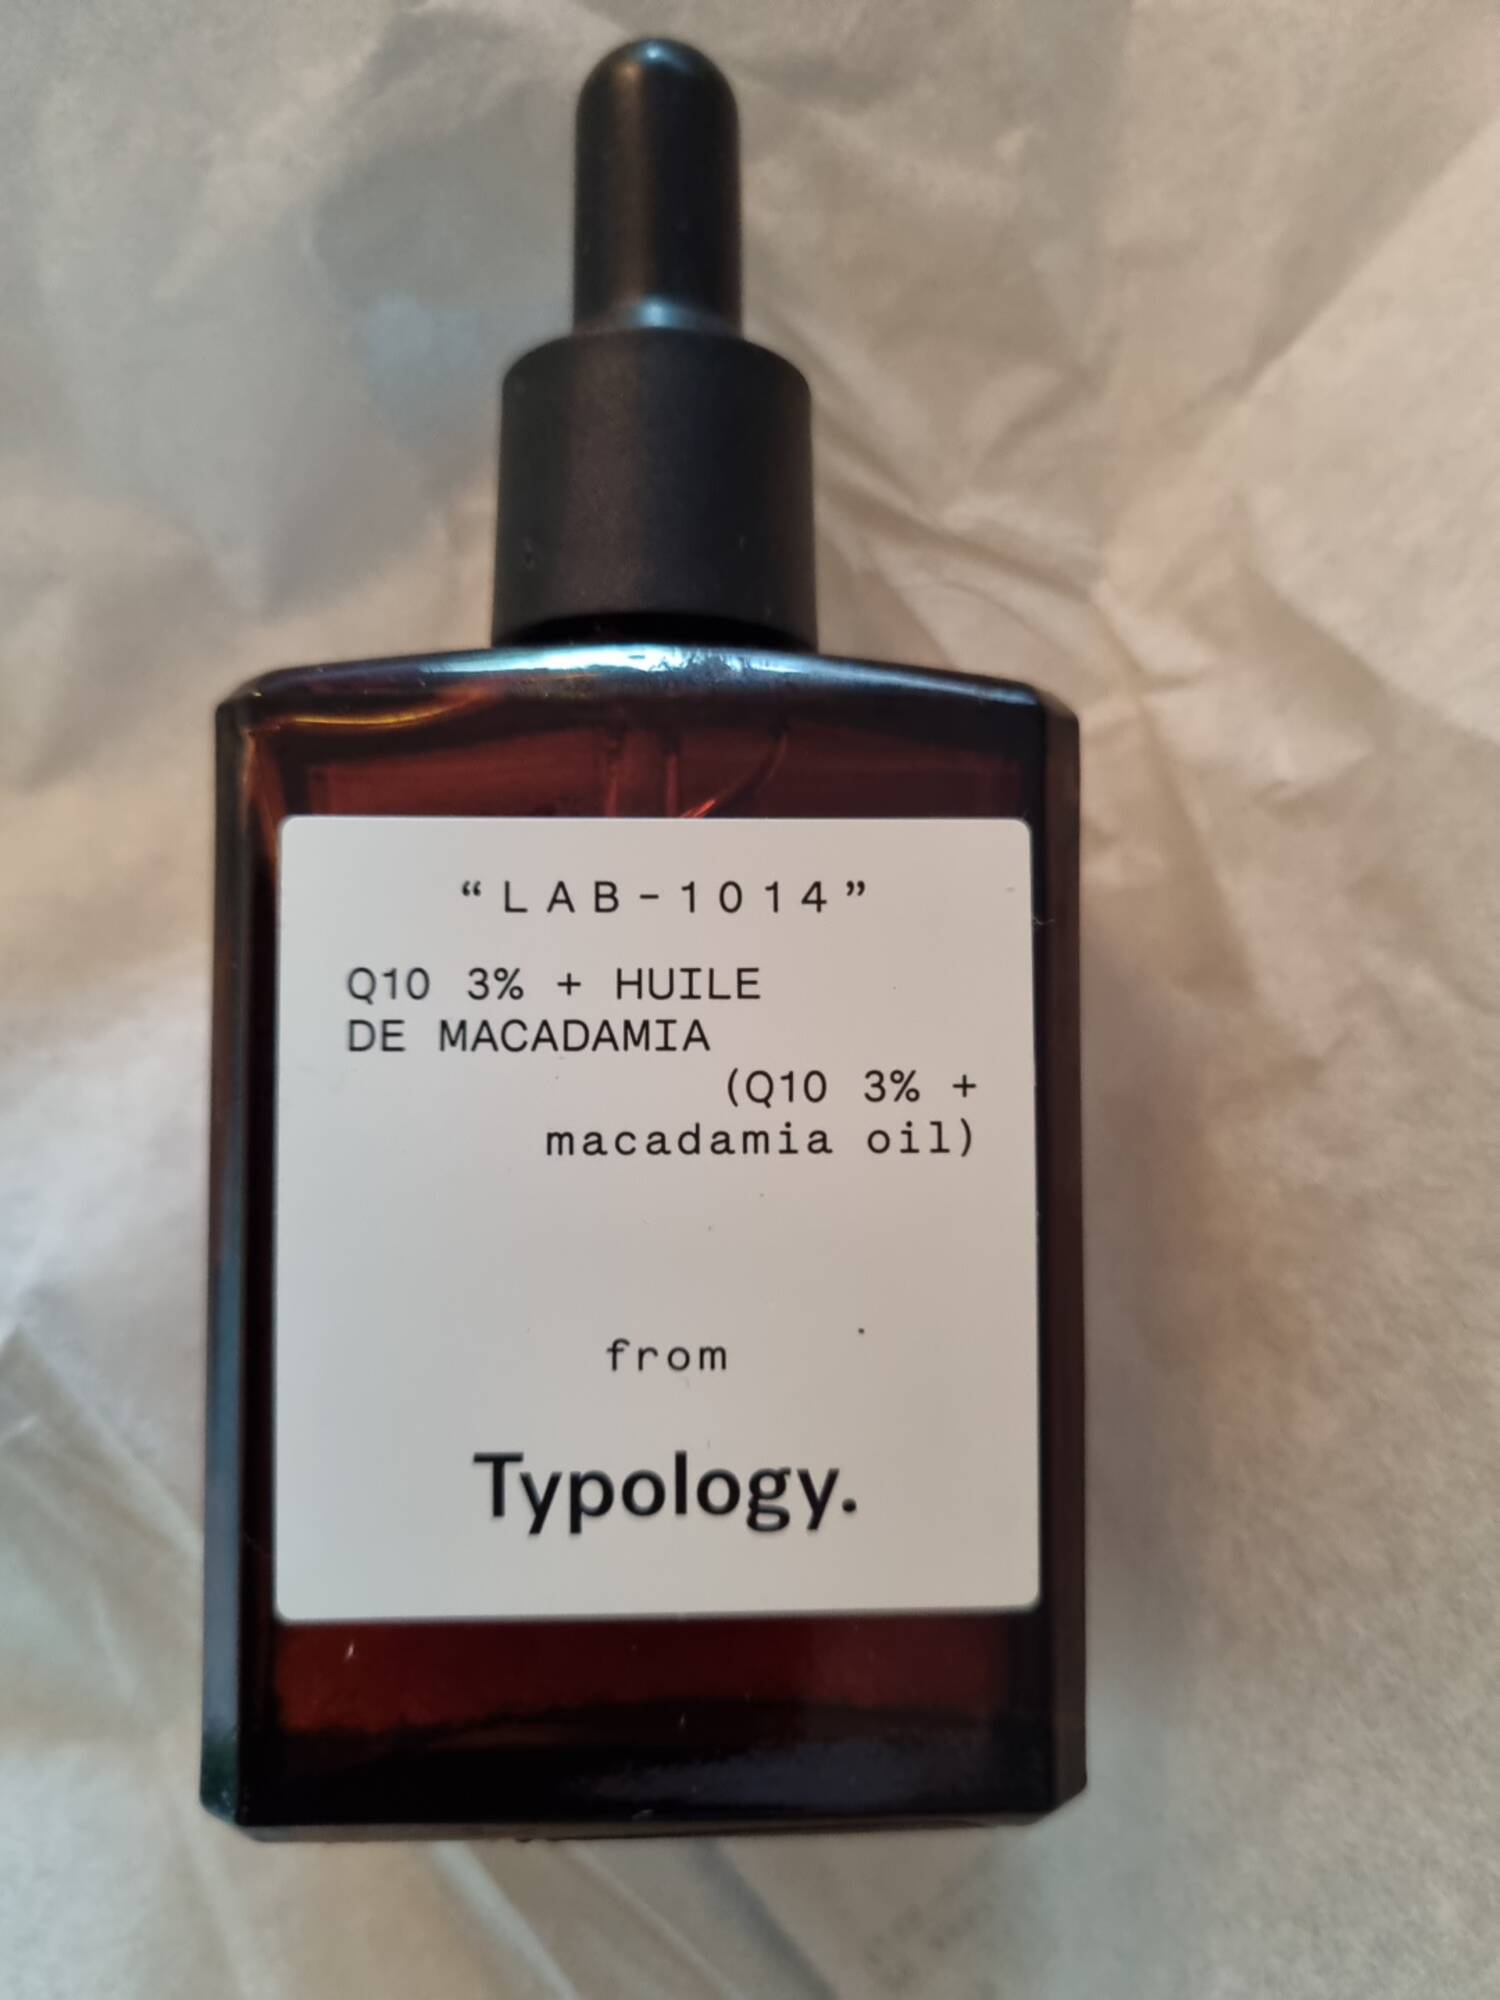 TYPOLOGY - LAB-1014 - Q10 3% + huile de macadamia